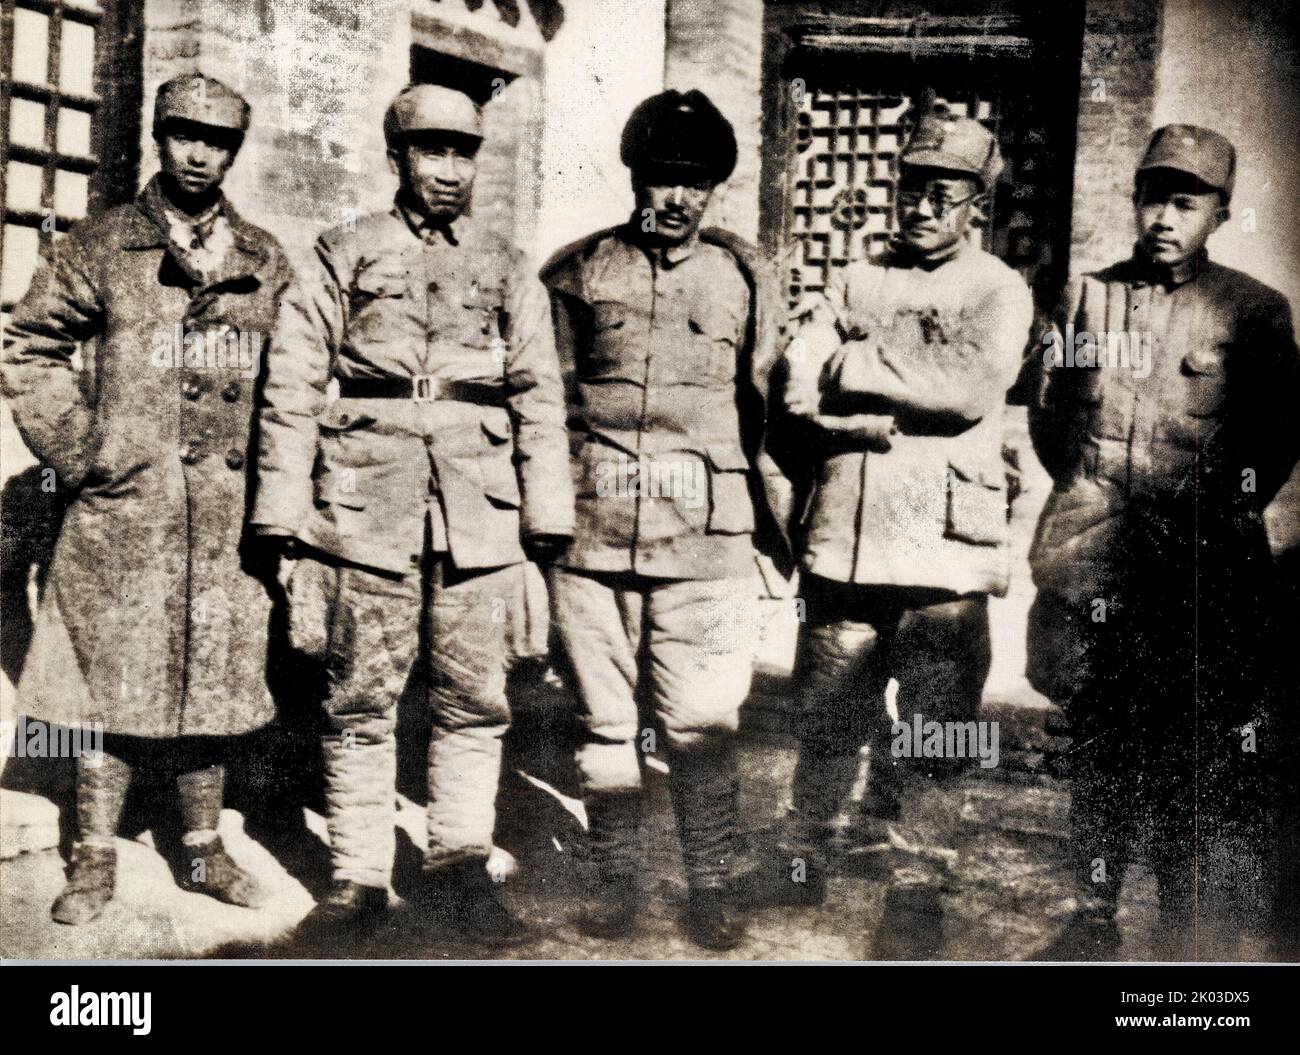 Gruppenfoto am Hauptquartier der Achten Route Army im Wutai Berg. Von rechts: Ren Bishi, Liu Bocheng, He Long, Zhu De, Xiao Ke. Ren Bishi war ein militärischer und politischer Führer in der frühen Kommunistischen Partei Chinas. Anfang 1930s Stockfoto